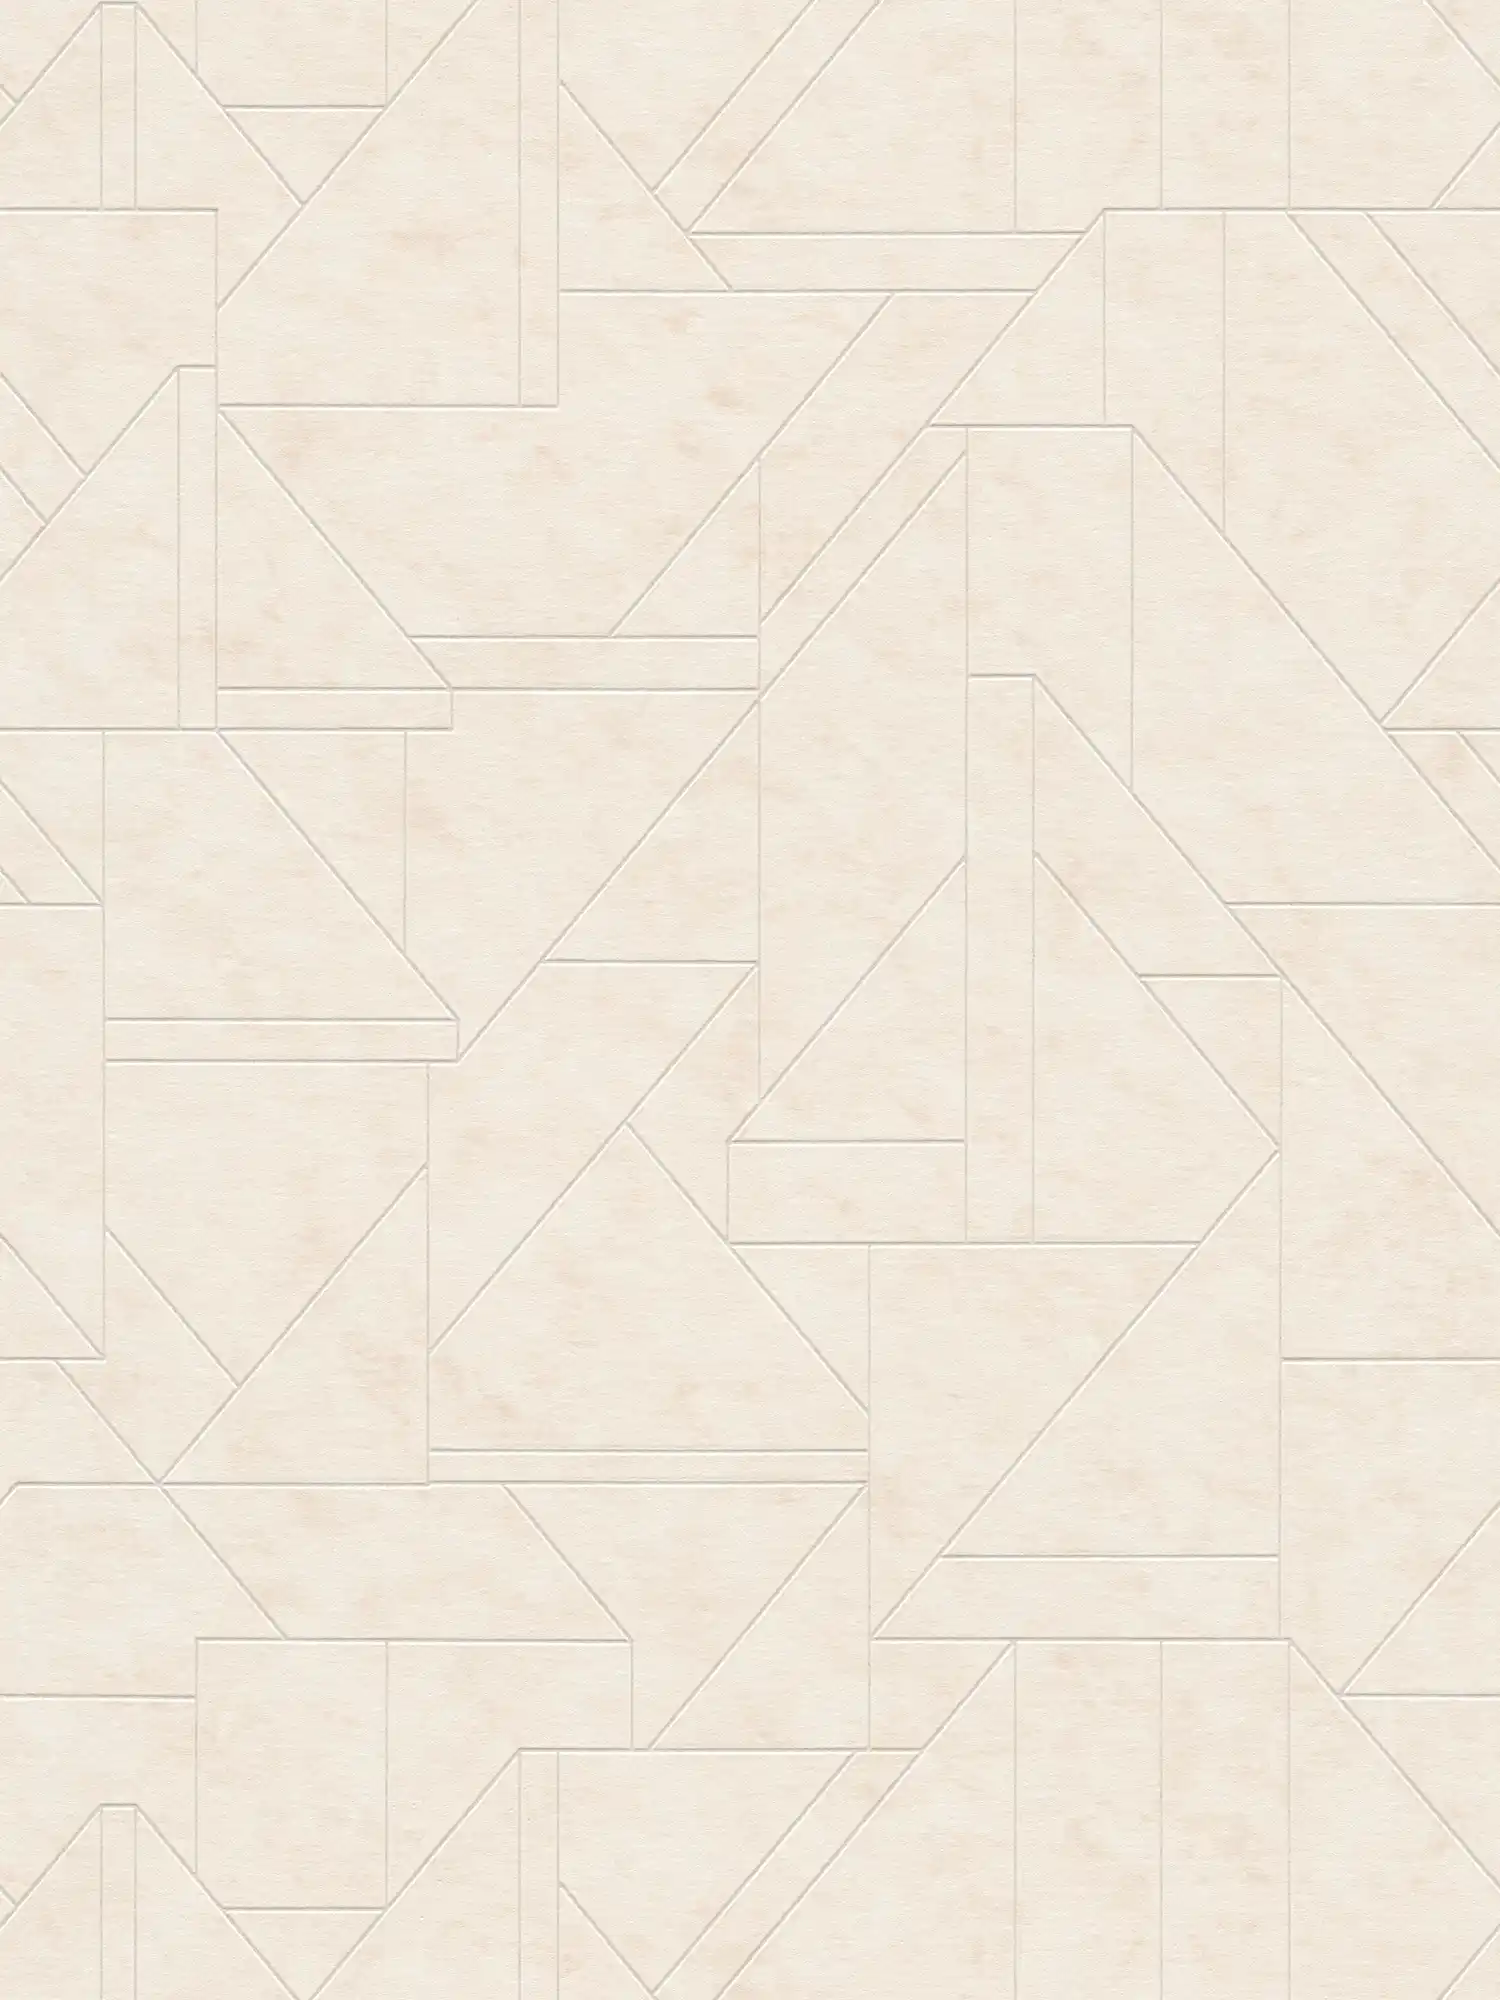 Vliestapete mit grafischen Linienmuster – Creme, Weiß, Silber
